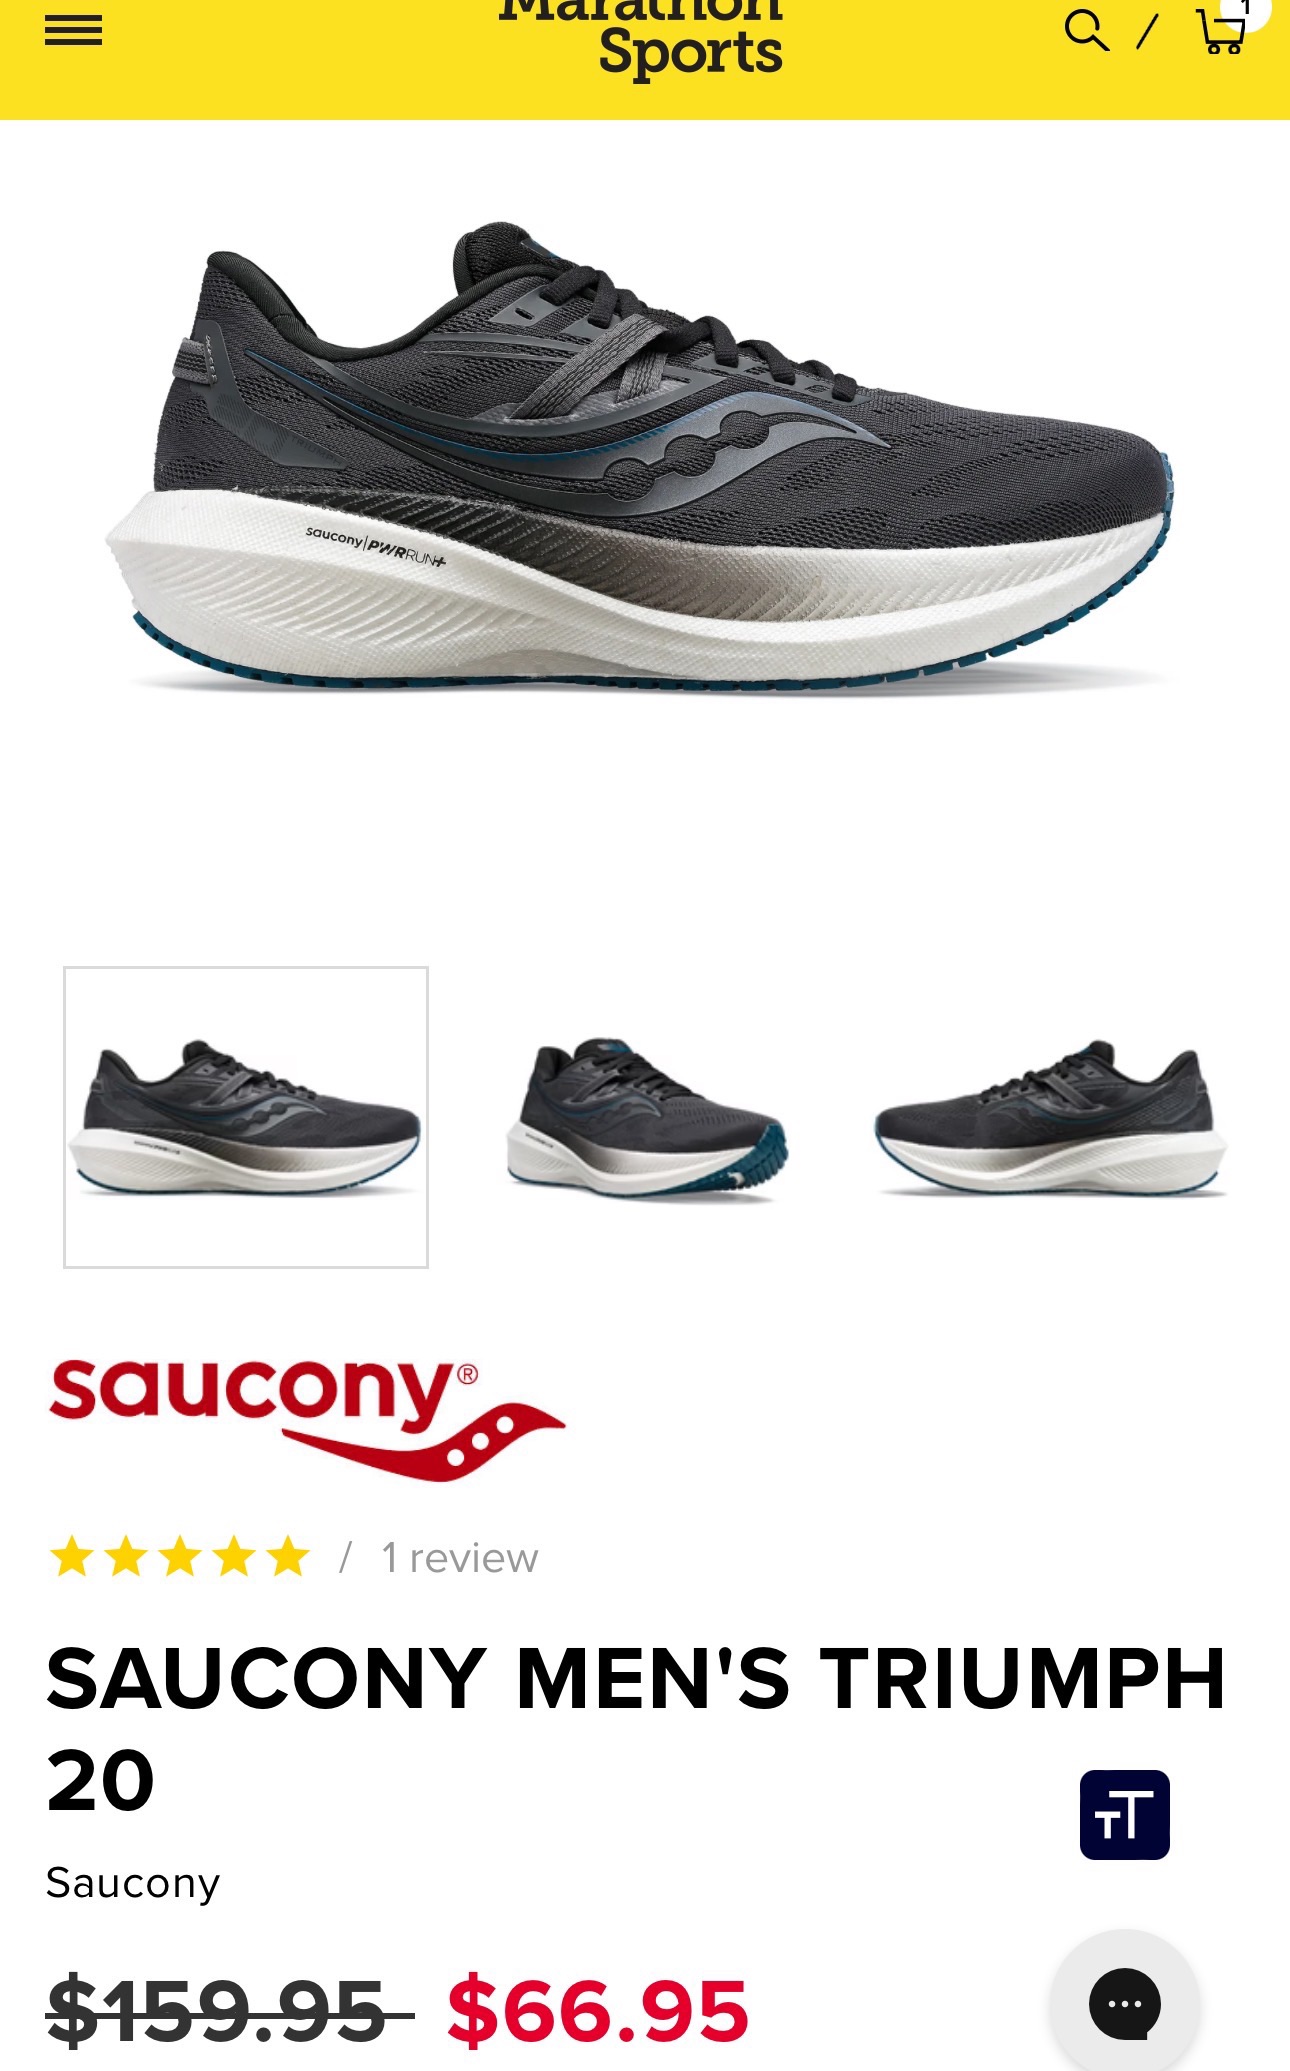 Saucony Men's Triumph 20